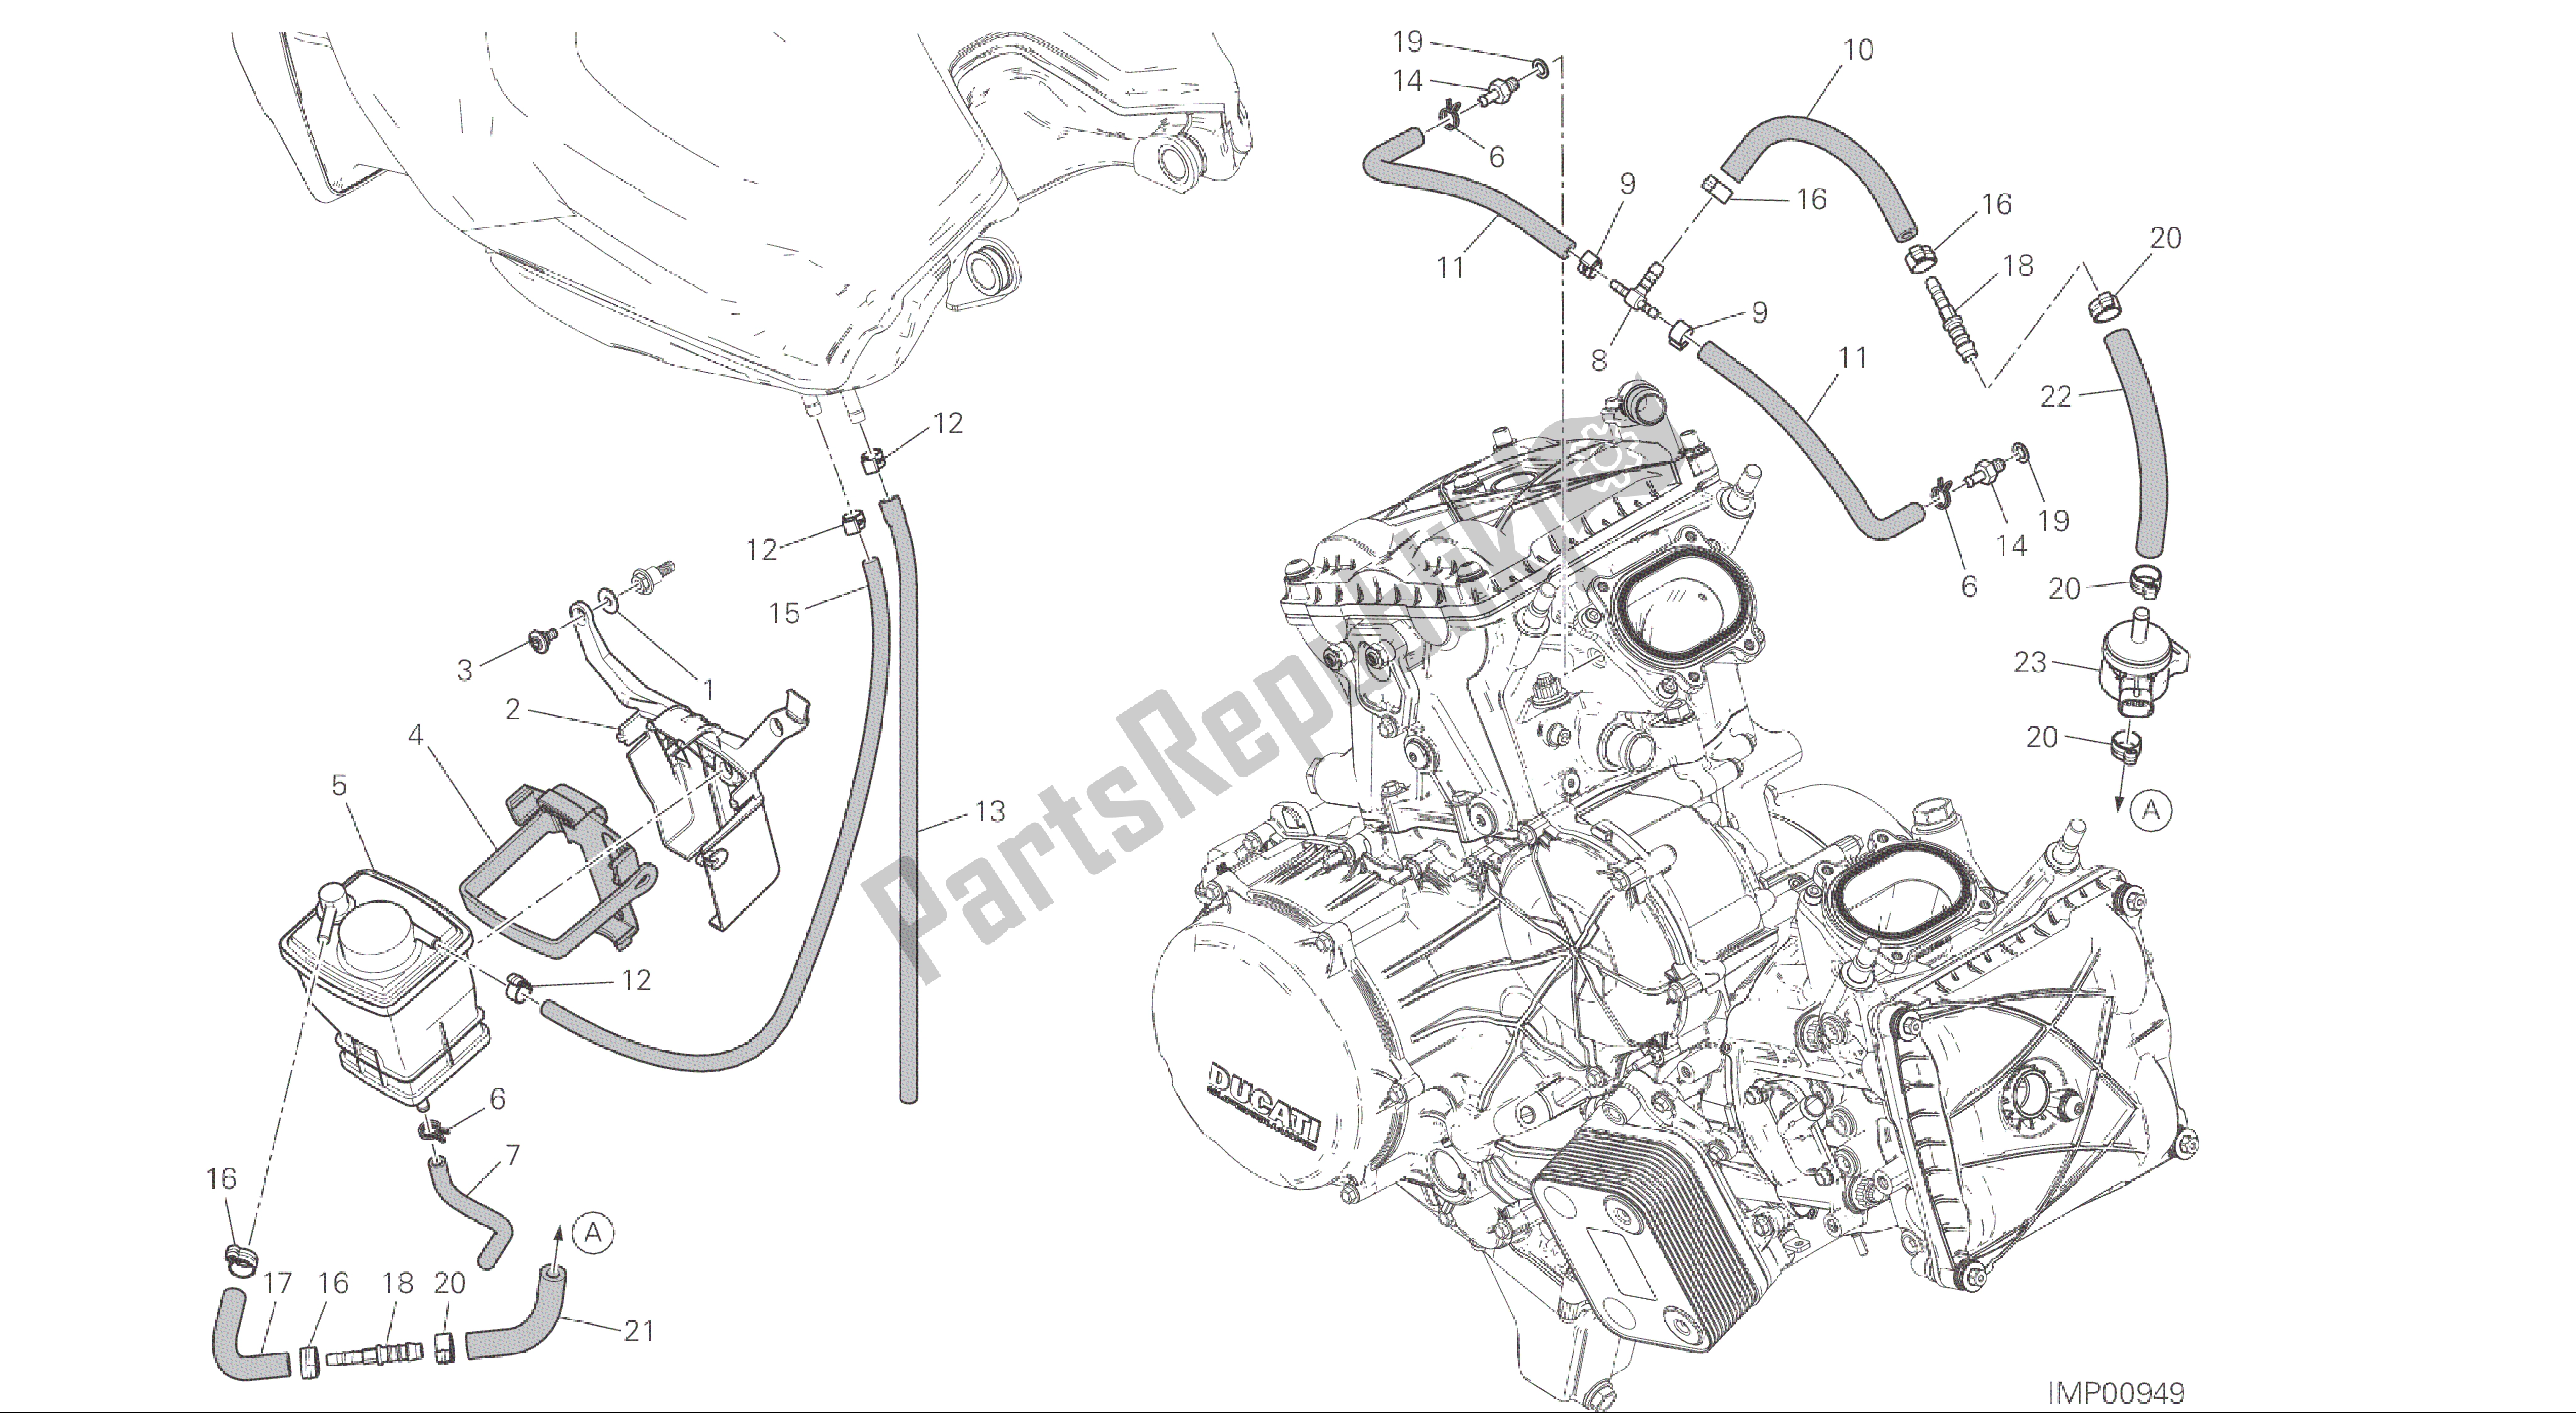 Alle onderdelen voor de Tekening 035 - Busfilter [mod: 1299; Xst: Twn] Groepsframe van de Ducati Panigale ABS 1299 2016